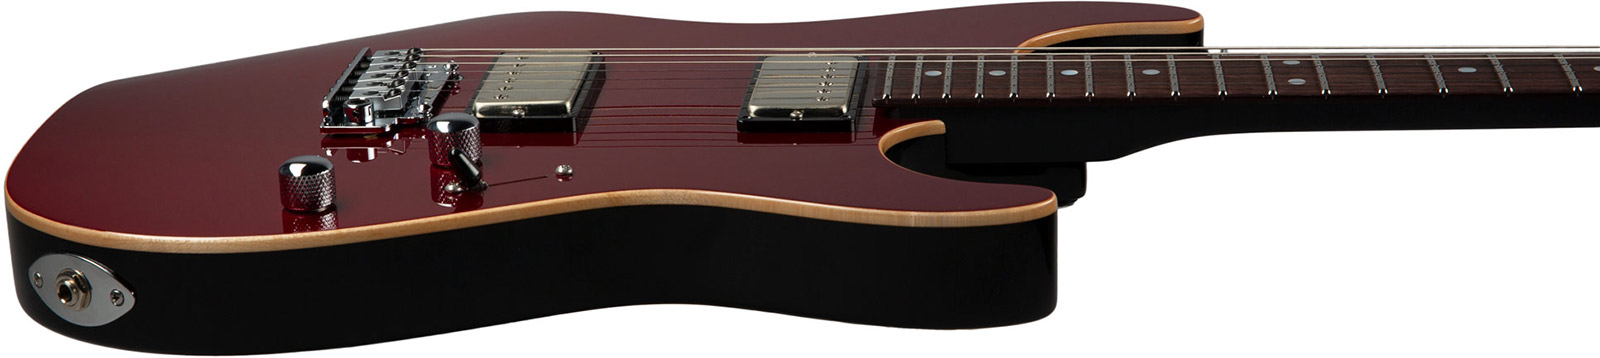 Suhr Pete Thorn Standard 01-sig-0029 Signature 2h Trem Rw - Garnet Red - Elektrische gitaar in Str-vorm - Variation 2